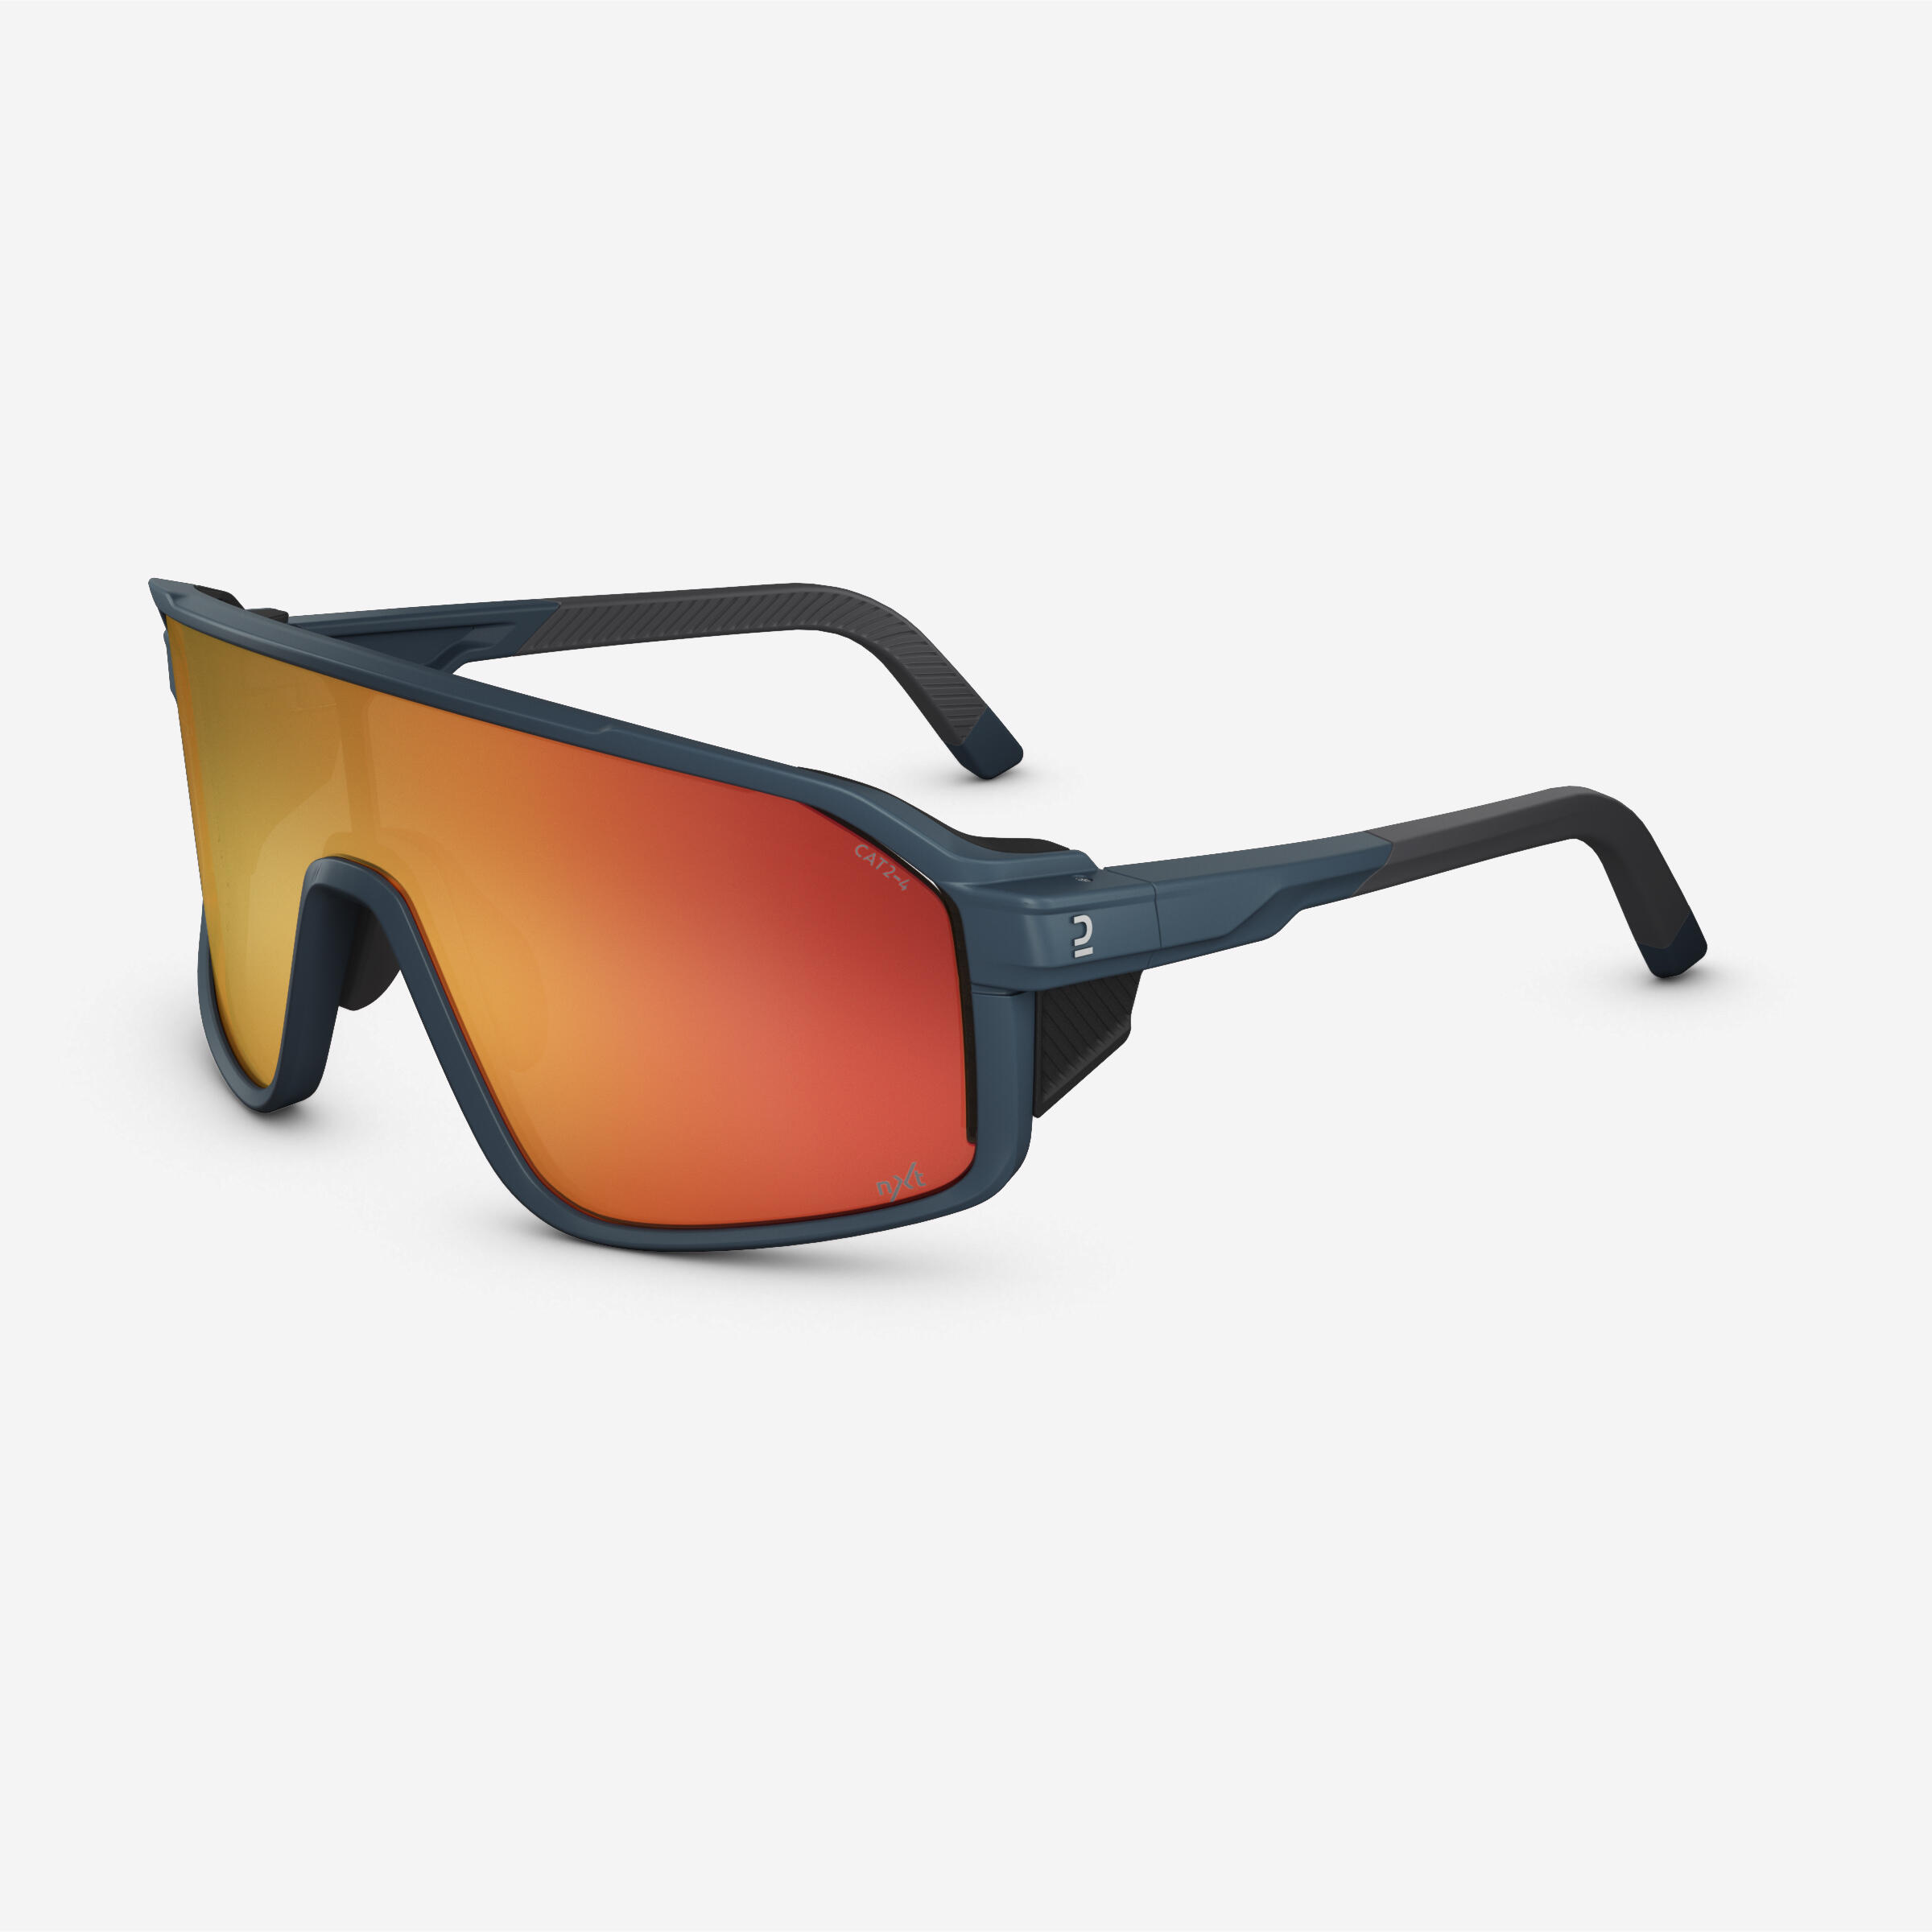 Sunglasses MH900 Photochromic (CAT 2 /4) Full Lens - Volcano Grey 1/9